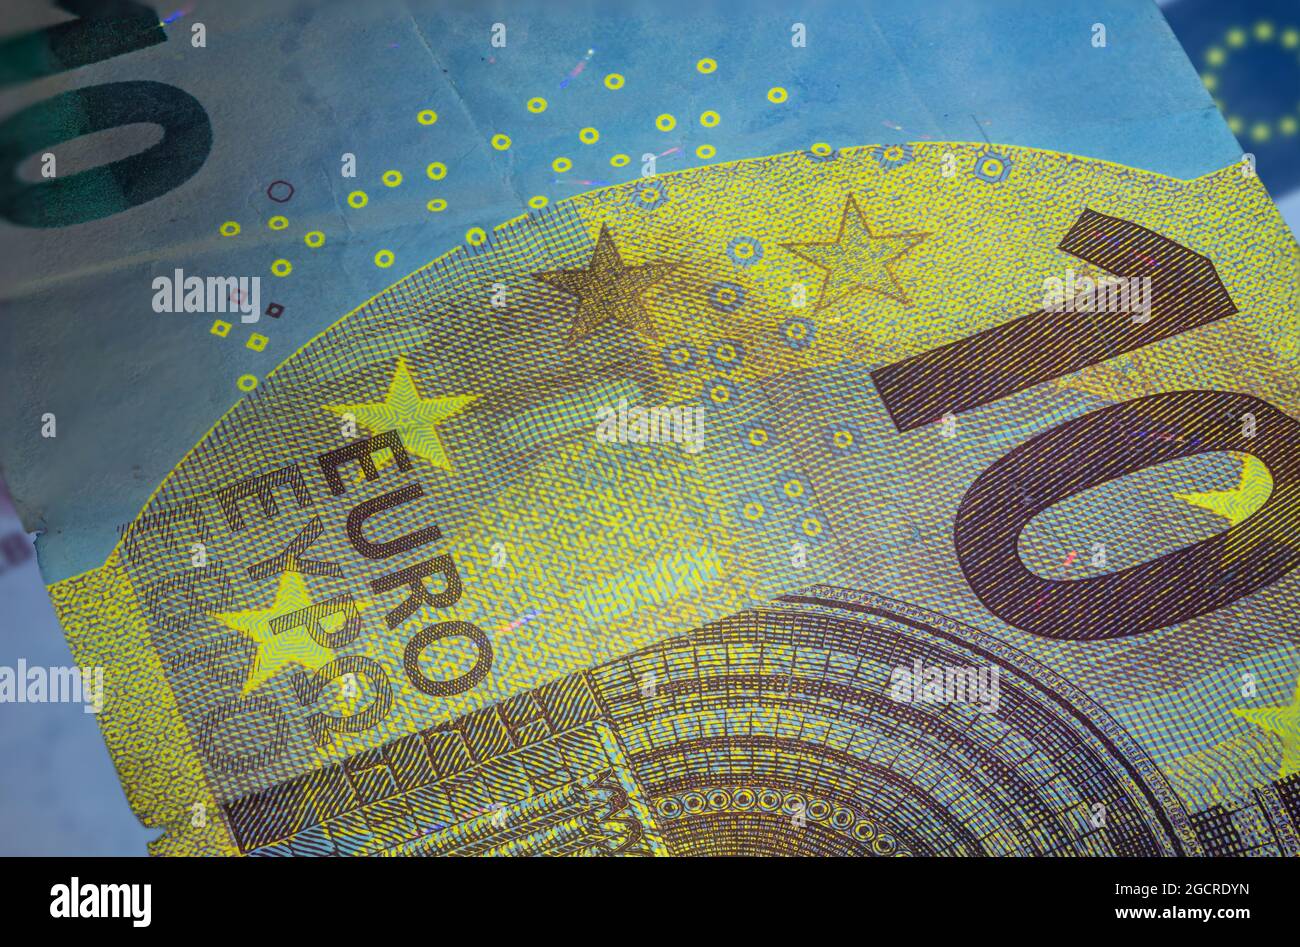 Banconota da dieci Euro sotto luce UV fluorescente. Immagine macro in primo piano del denaro europeo illuminata con luce Fluor. Carta moneta del centro europeo Foto Stock